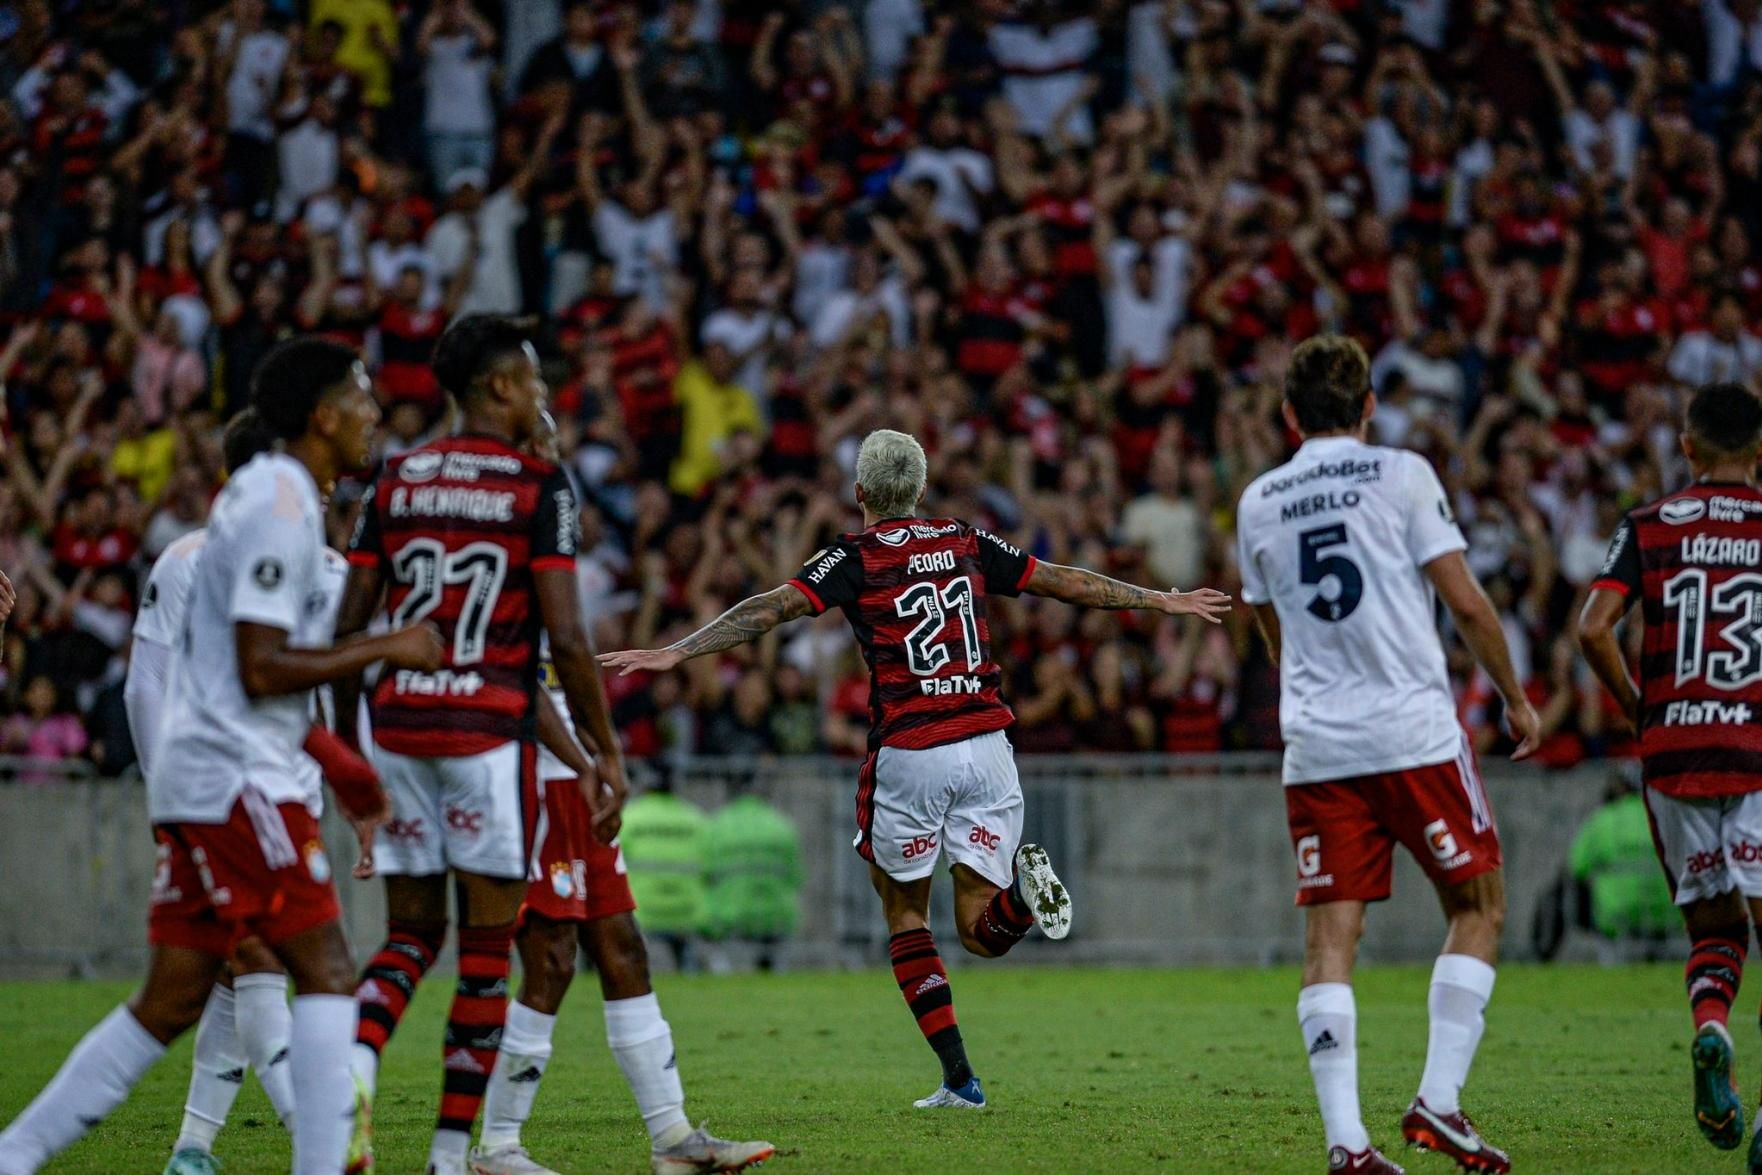 Negócio fechado! Isla é o novo jogador do Flamengo até 2022